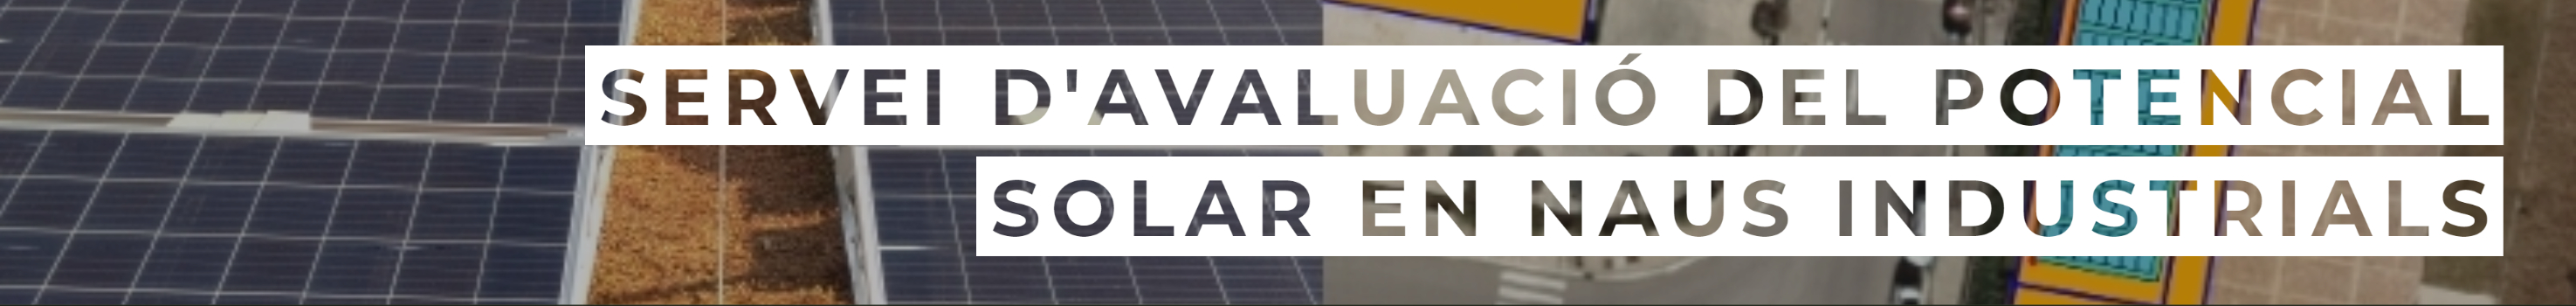 Servei avaluacio del potencial solar en naus industrials 350